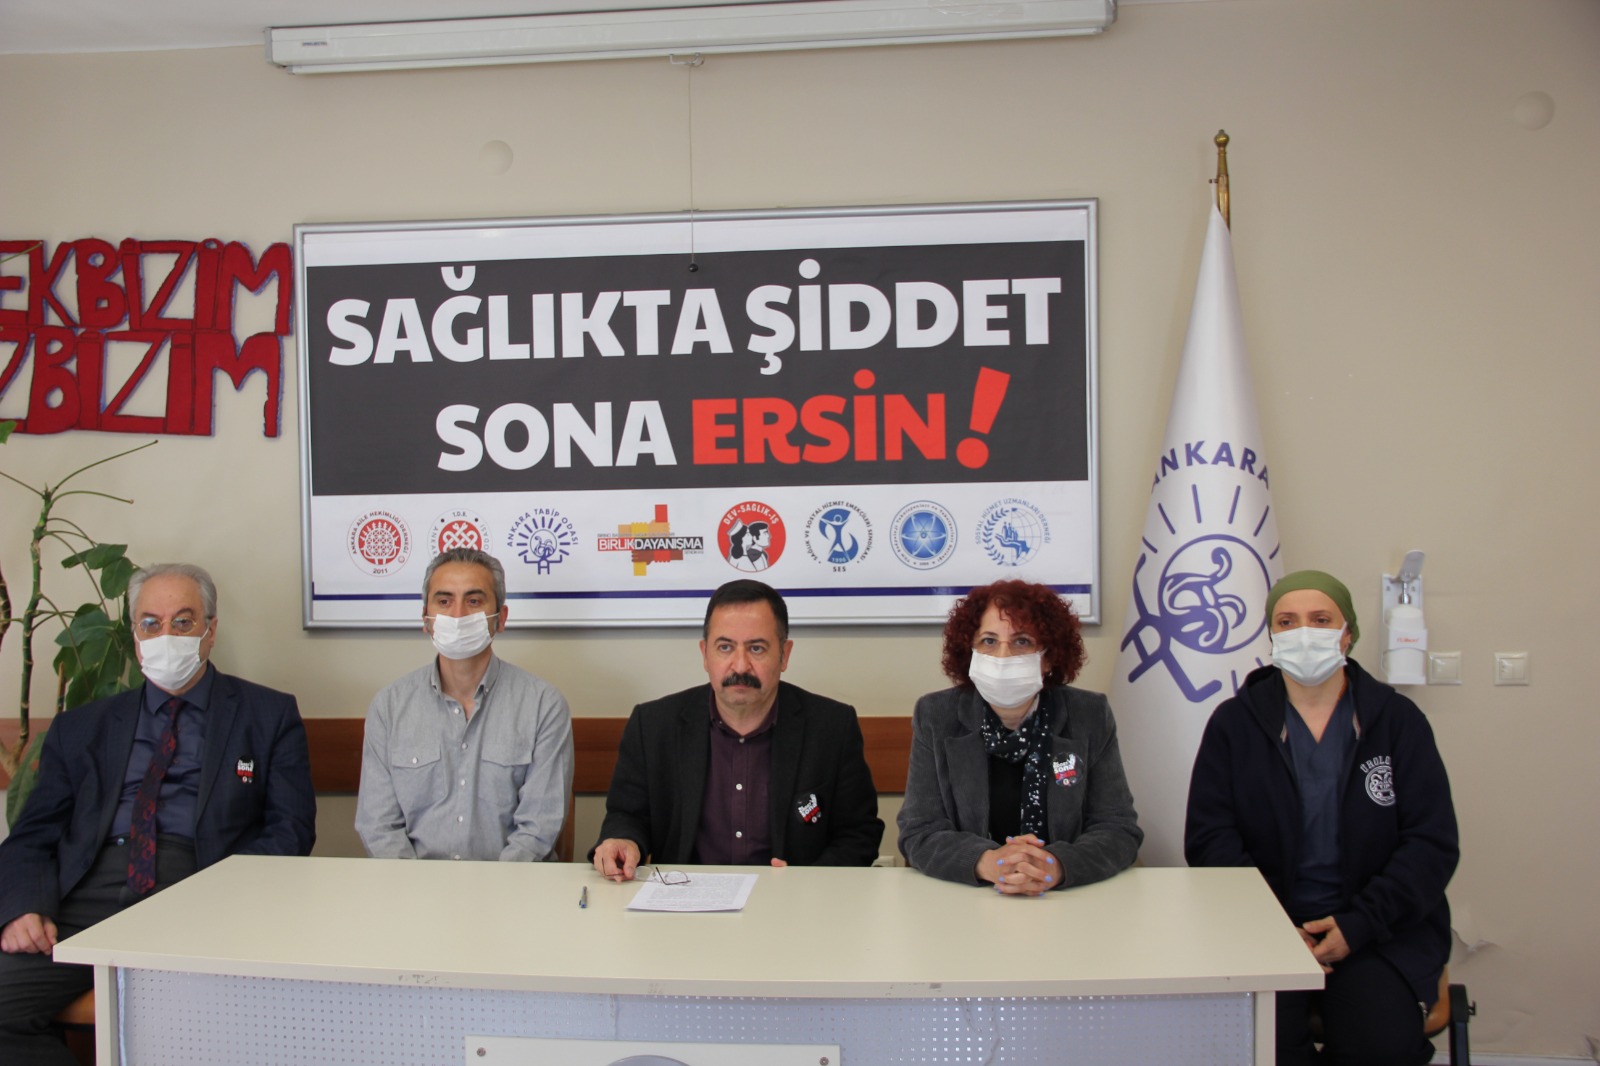 Ankara Sağlık Emek ve Meslek Örgütleri: Dr. Ersin Arslan’ın Aramızdan Ayrılışının Onuncu Yılında Sağlıkta Şiddet Nedeniyle Kaybettiğimiz Tüm Sağlık Emekçilerini Saygıyla Anıyoruz